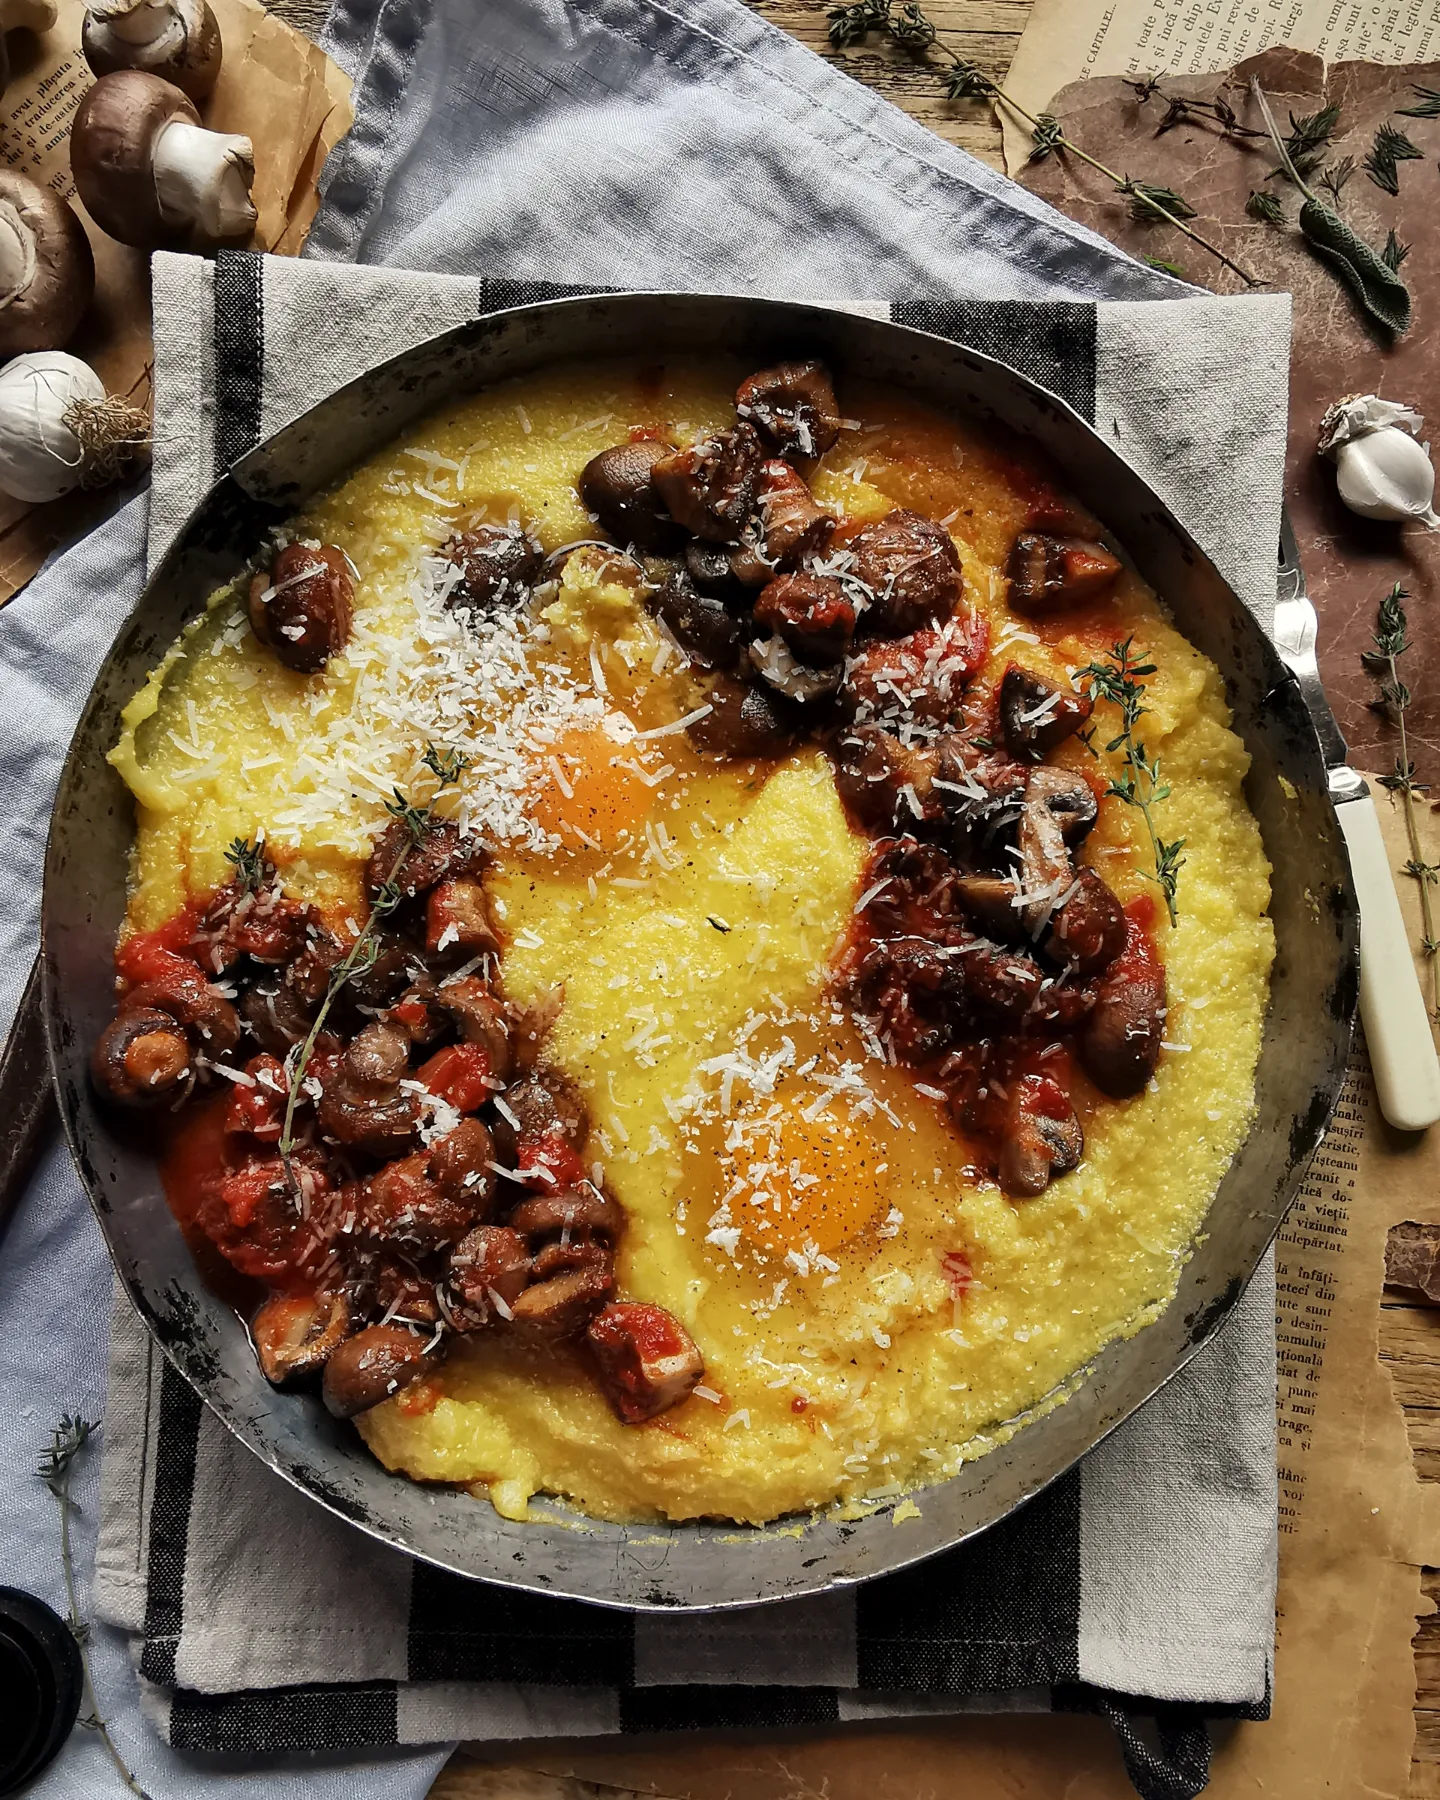 Mushroom ragu, eggs and polenta bake.